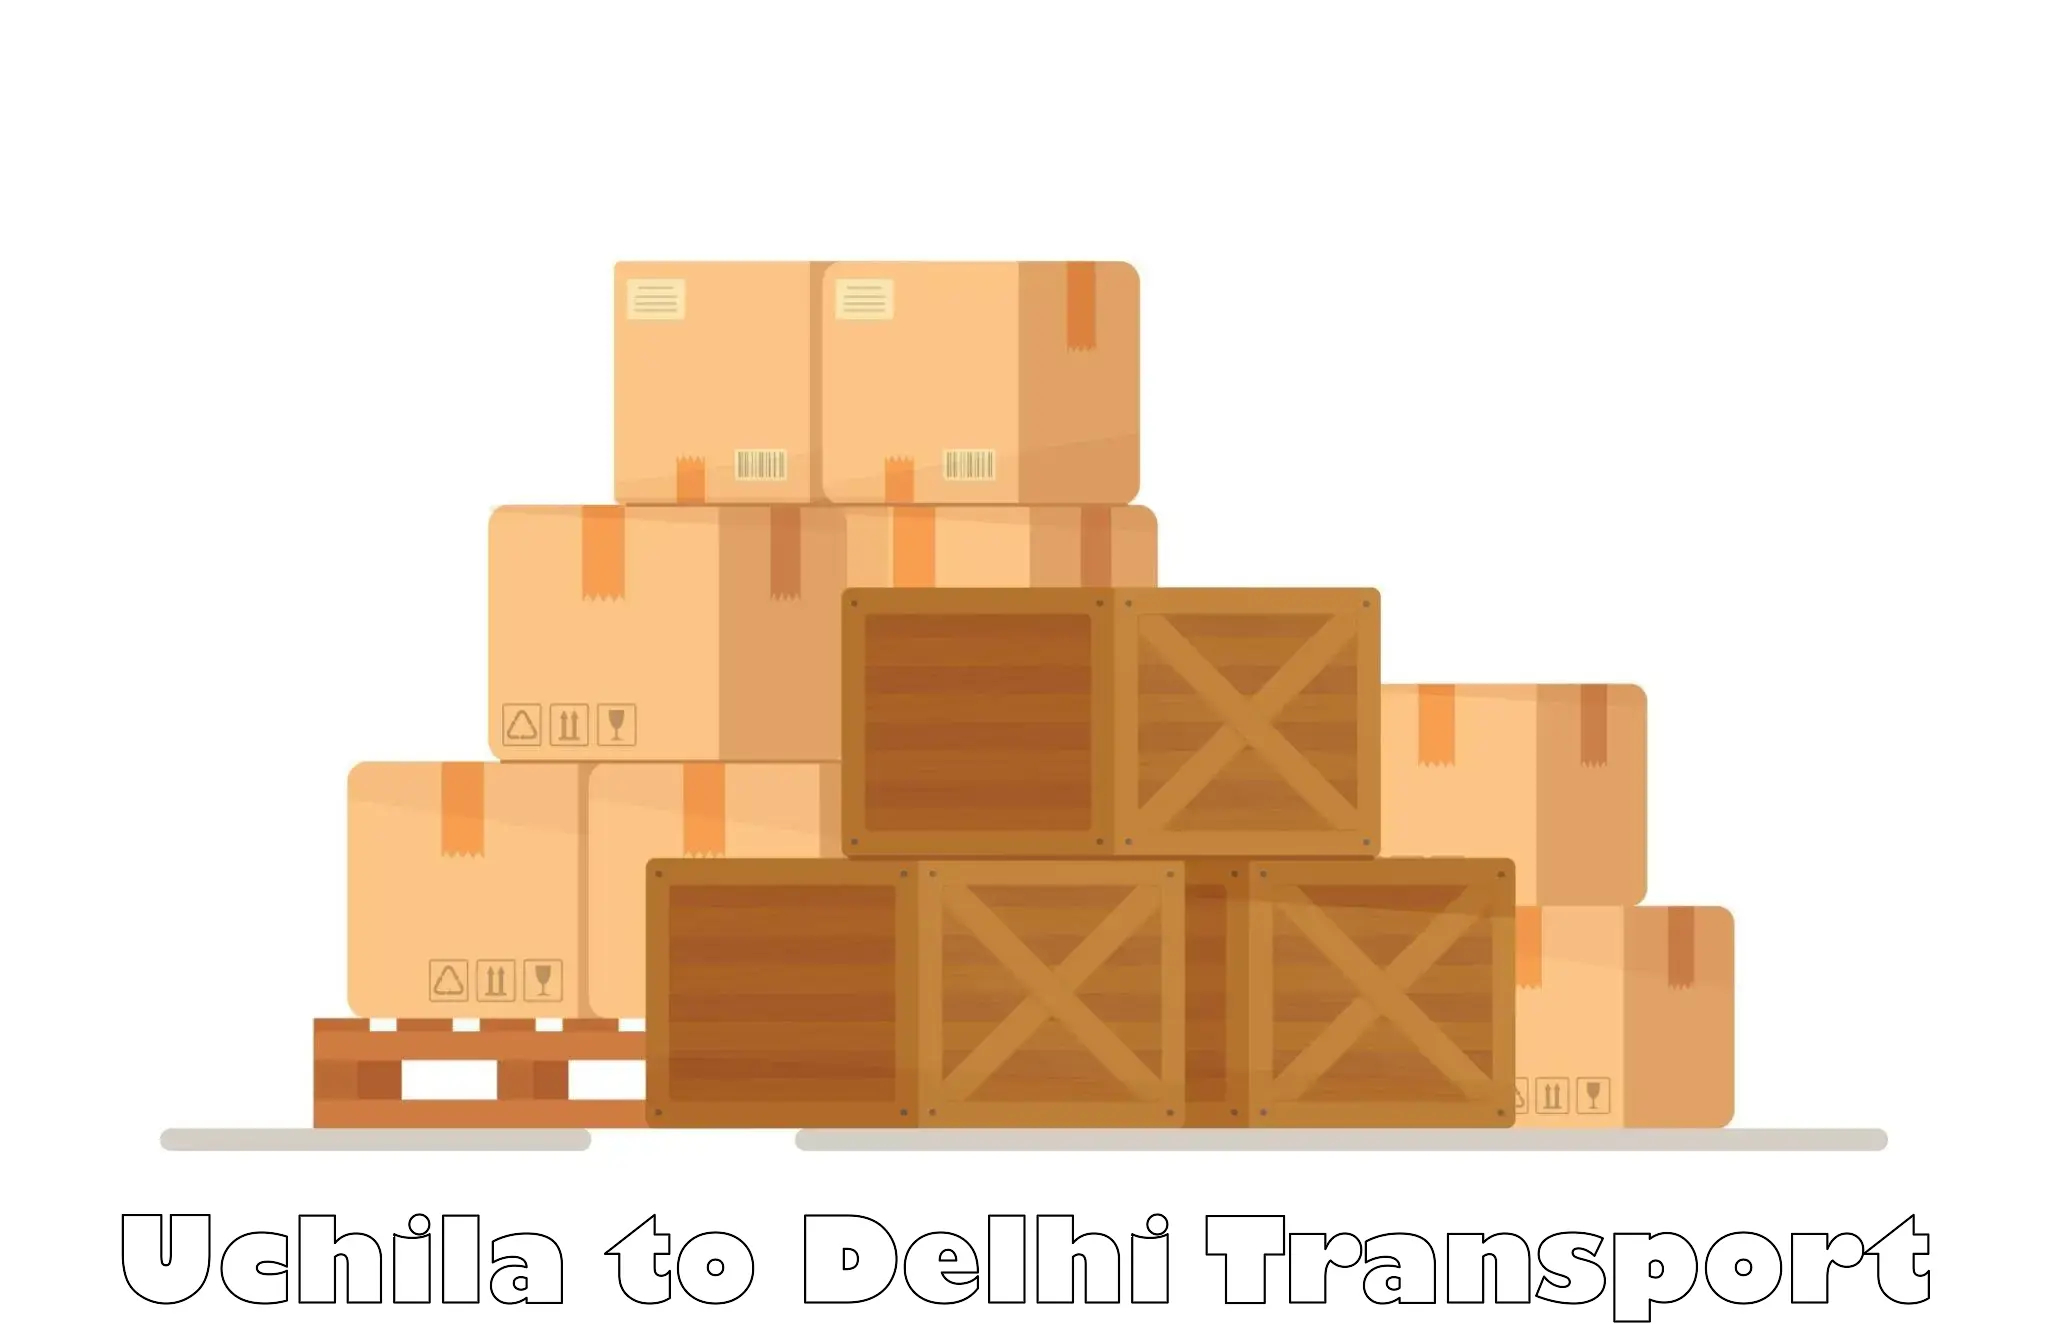 Daily transport service Uchila to Delhi